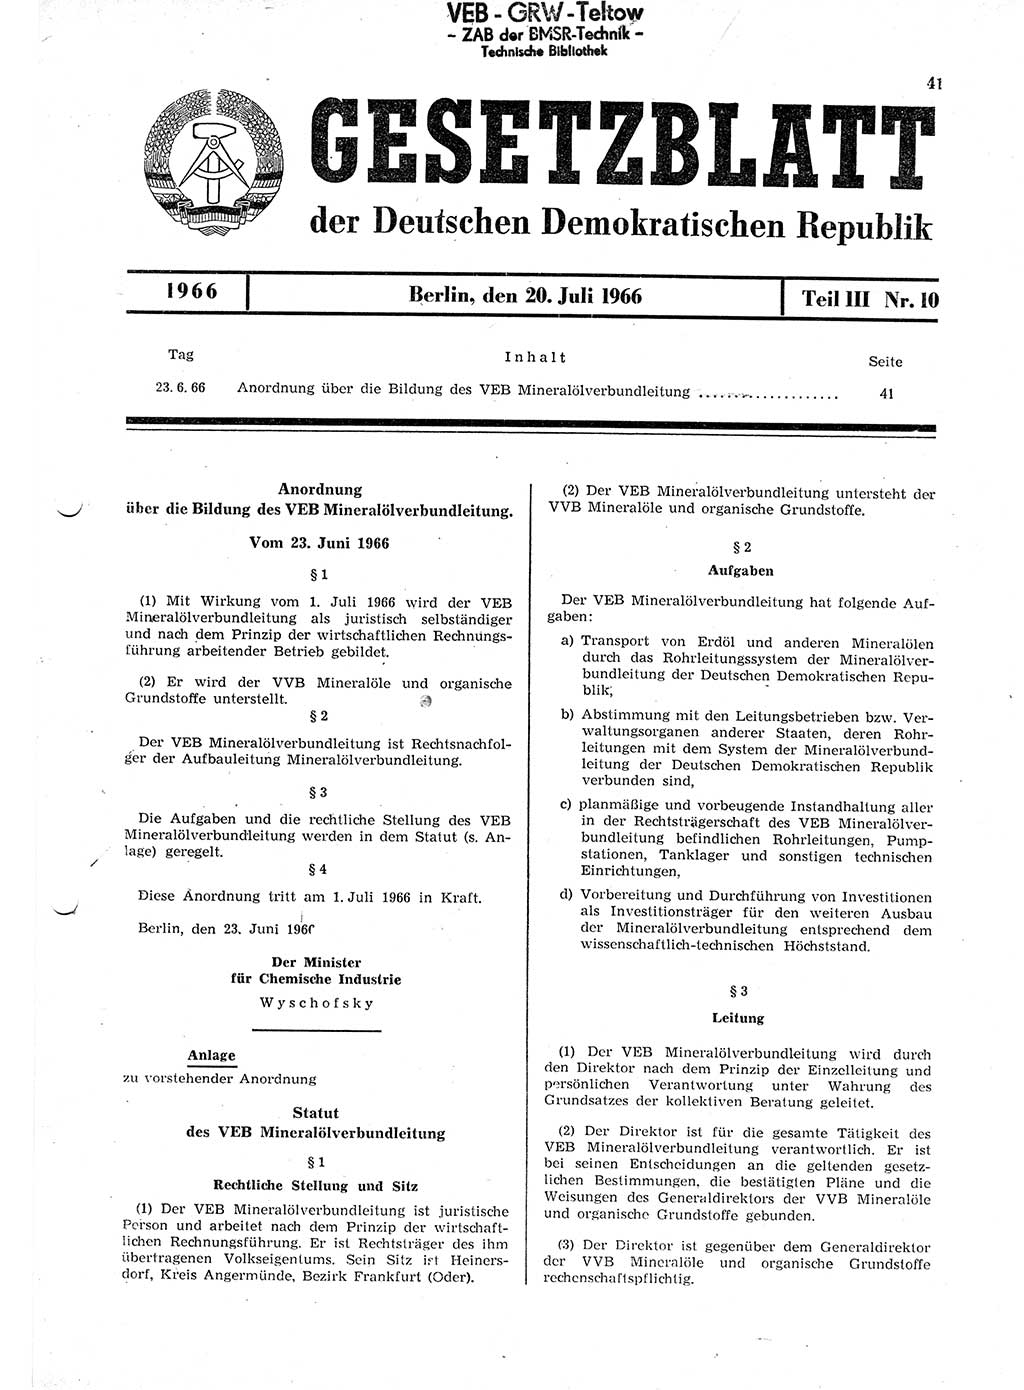 Gesetzblatt (GBl.) der Deutschen Demokratischen Republik (DDR) Teil ⅠⅠⅠ 1966, Seite 41 (GBl. DDR ⅠⅠⅠ 1966, S. 41)